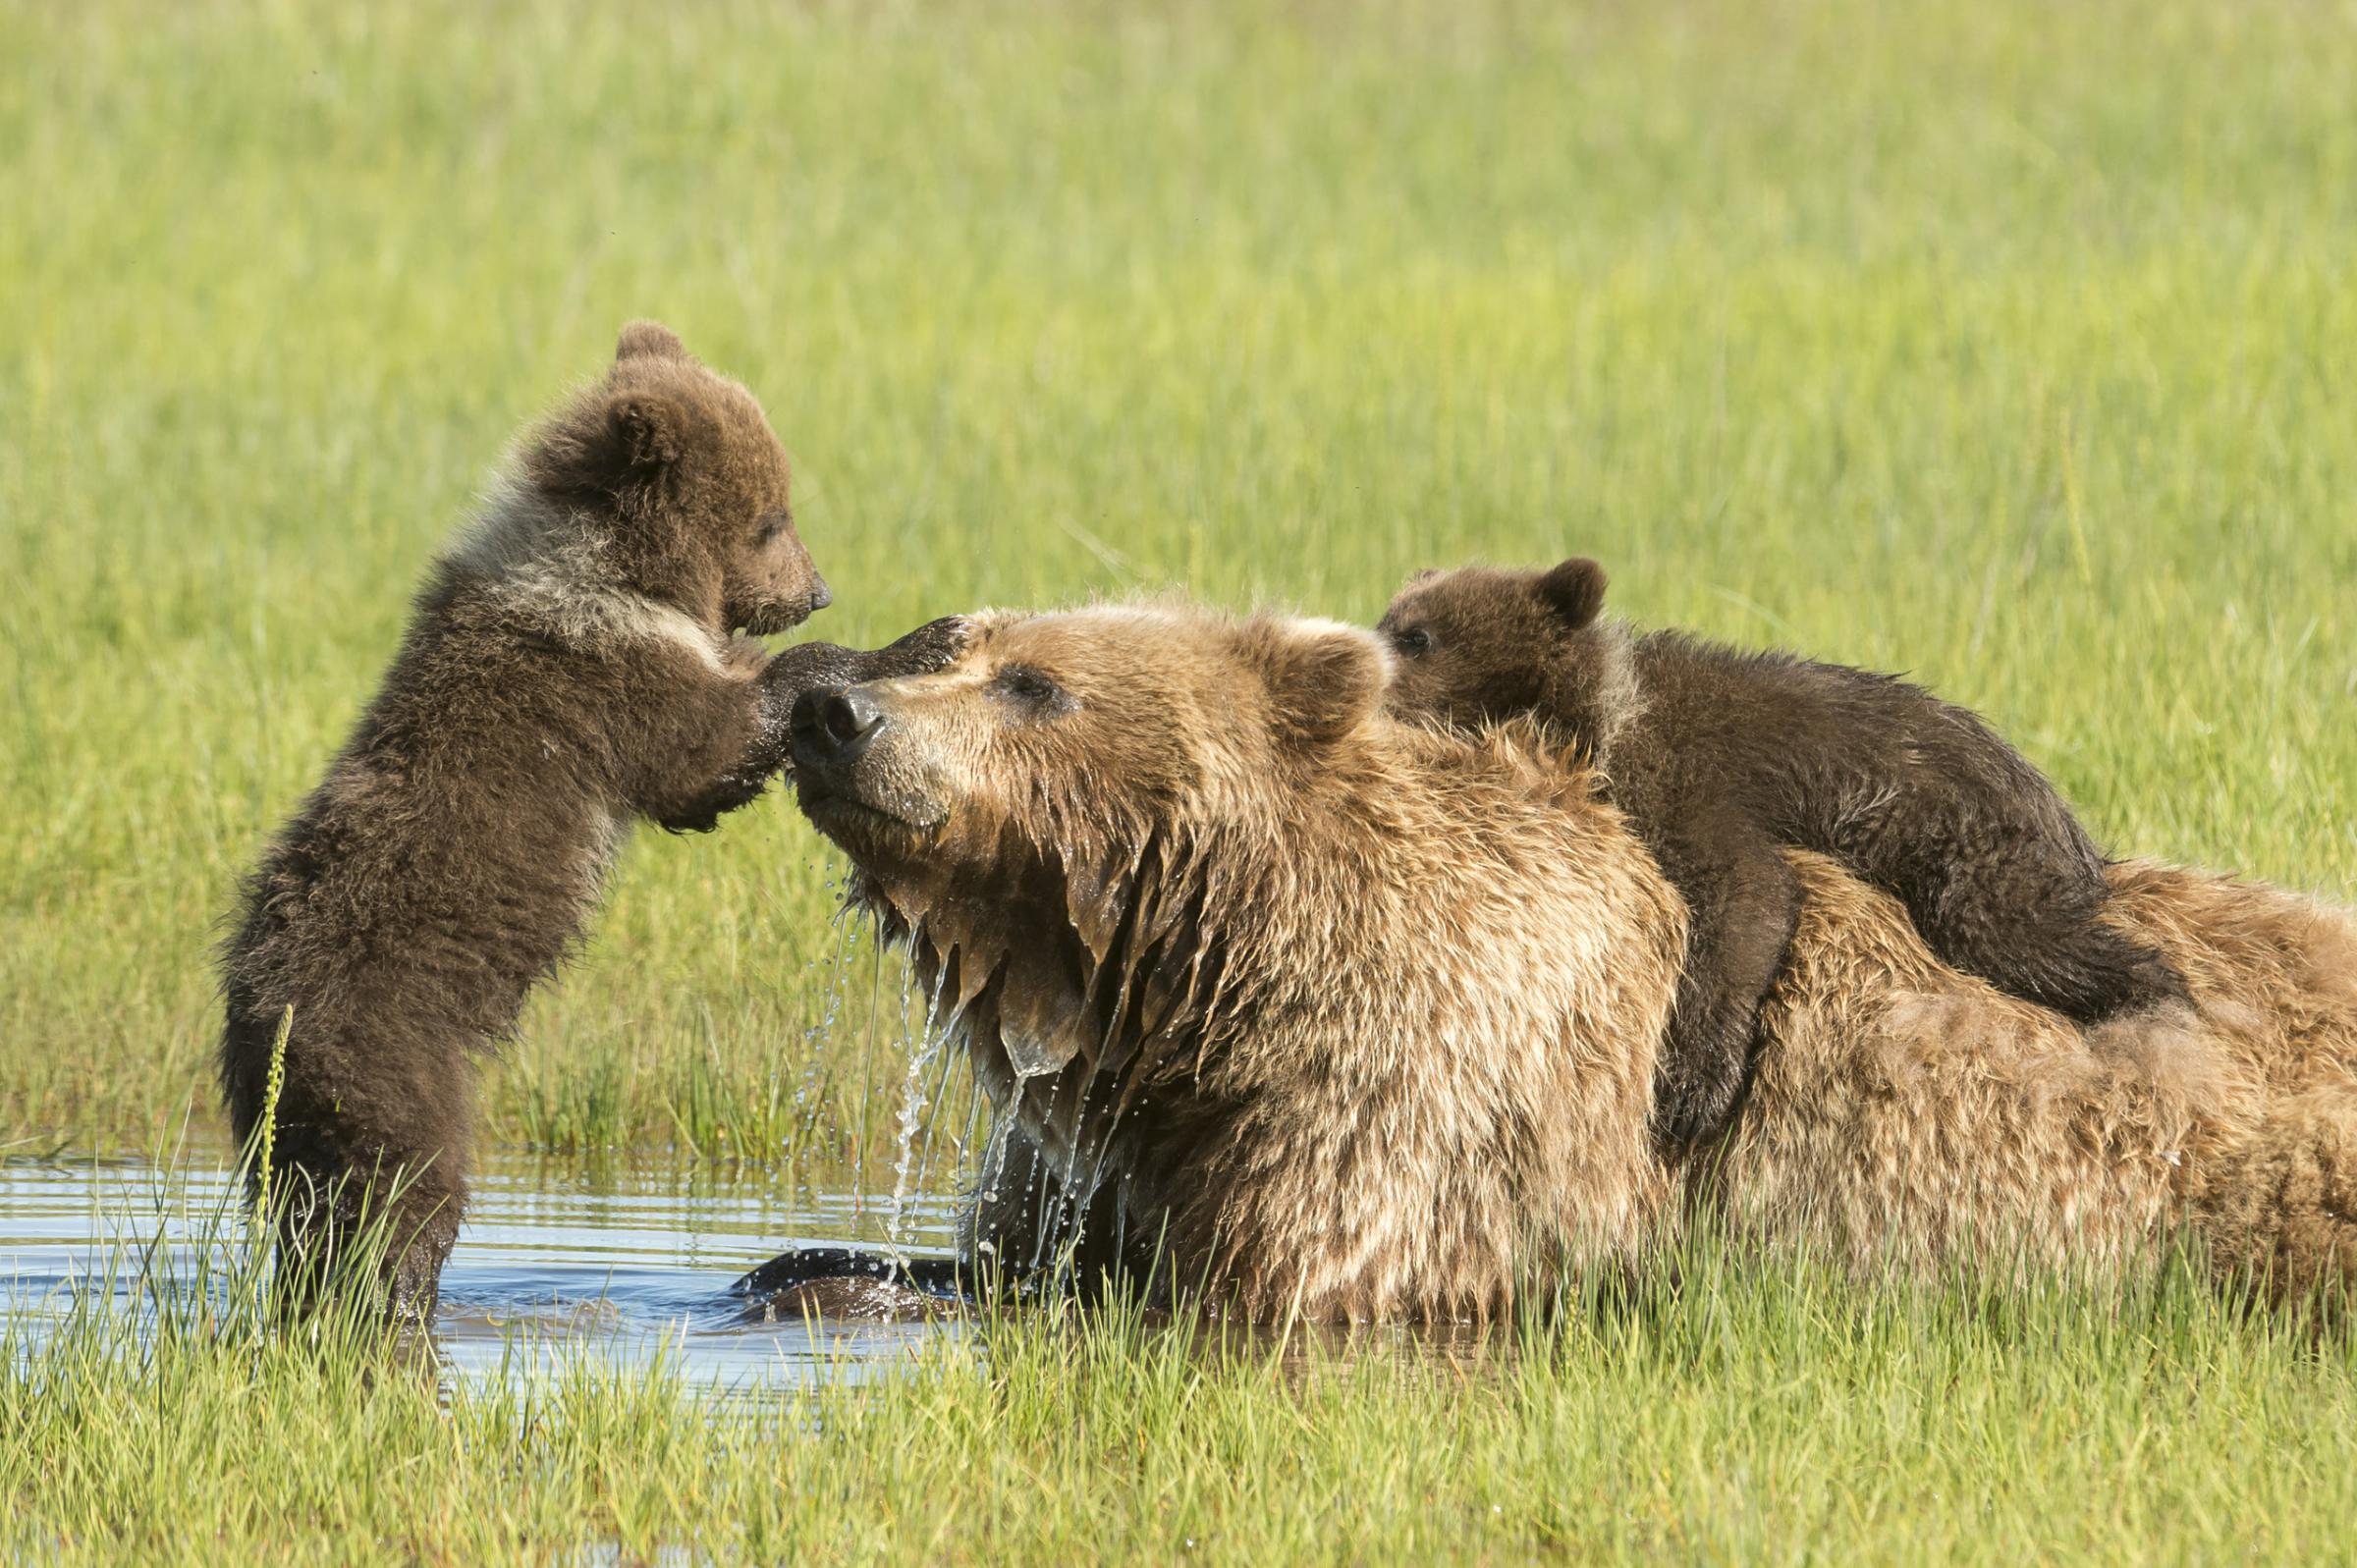 Grizzly bears, Ursus horribilis